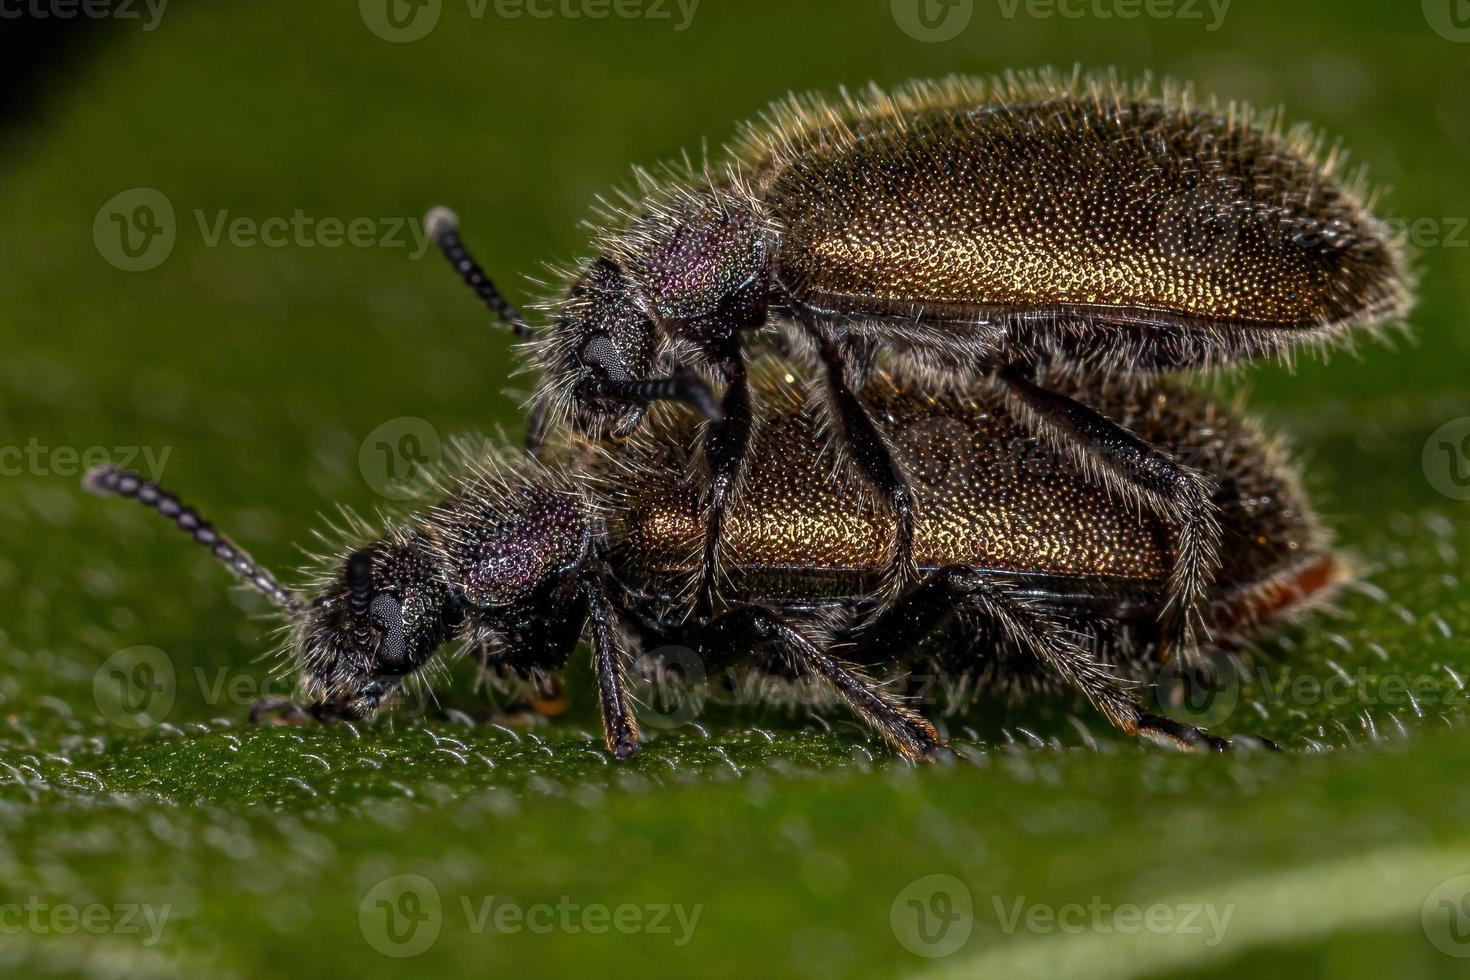 escarabajos adultos de articulaciones largas foto